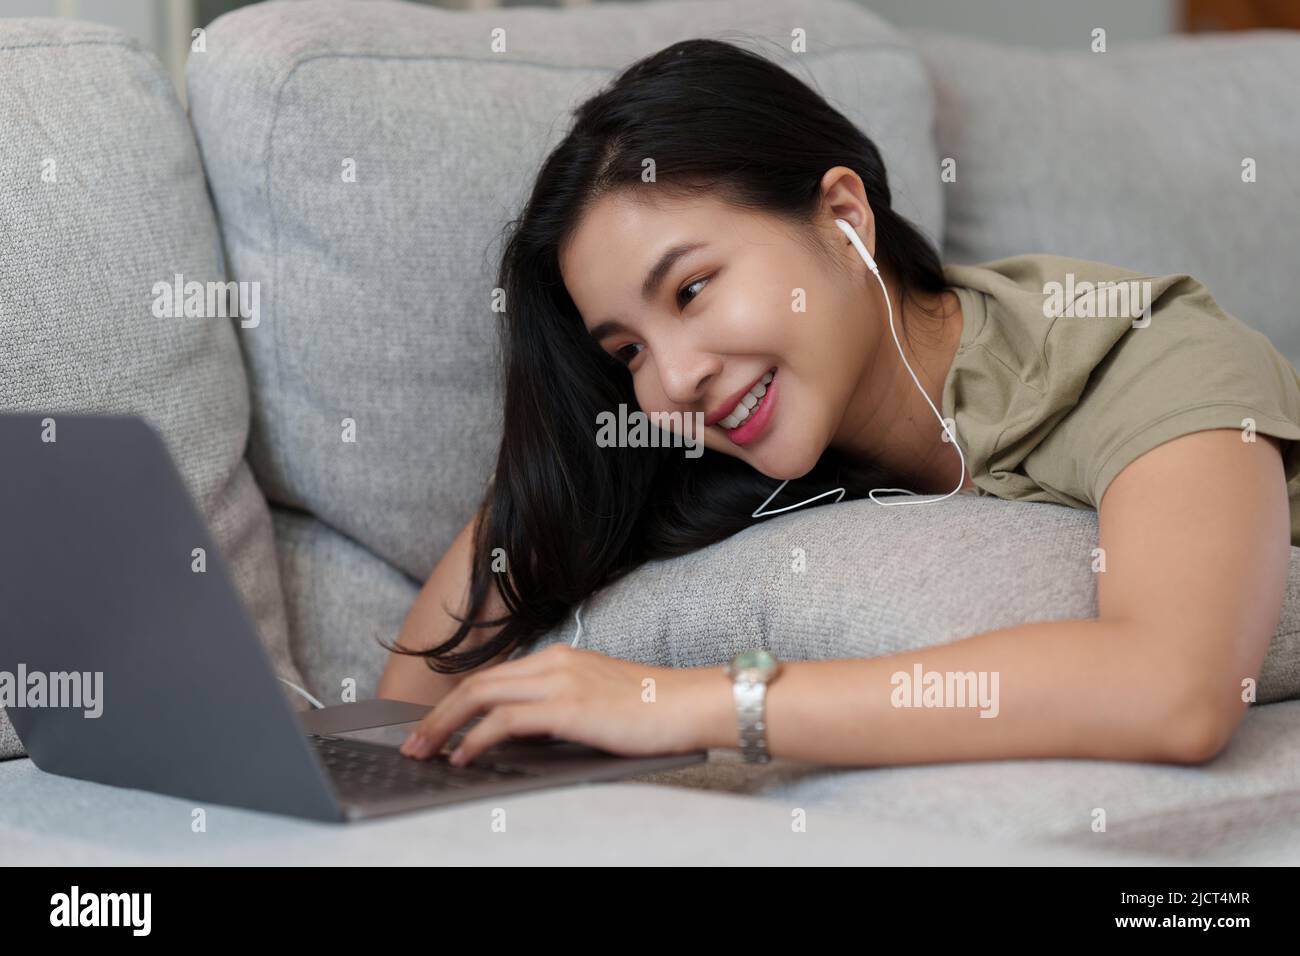 Portrait d'une femme heureuse et belle couché sur un canapé confortable et écouter de la musique en streaming sur un ordinateur portable. Banque D'Images